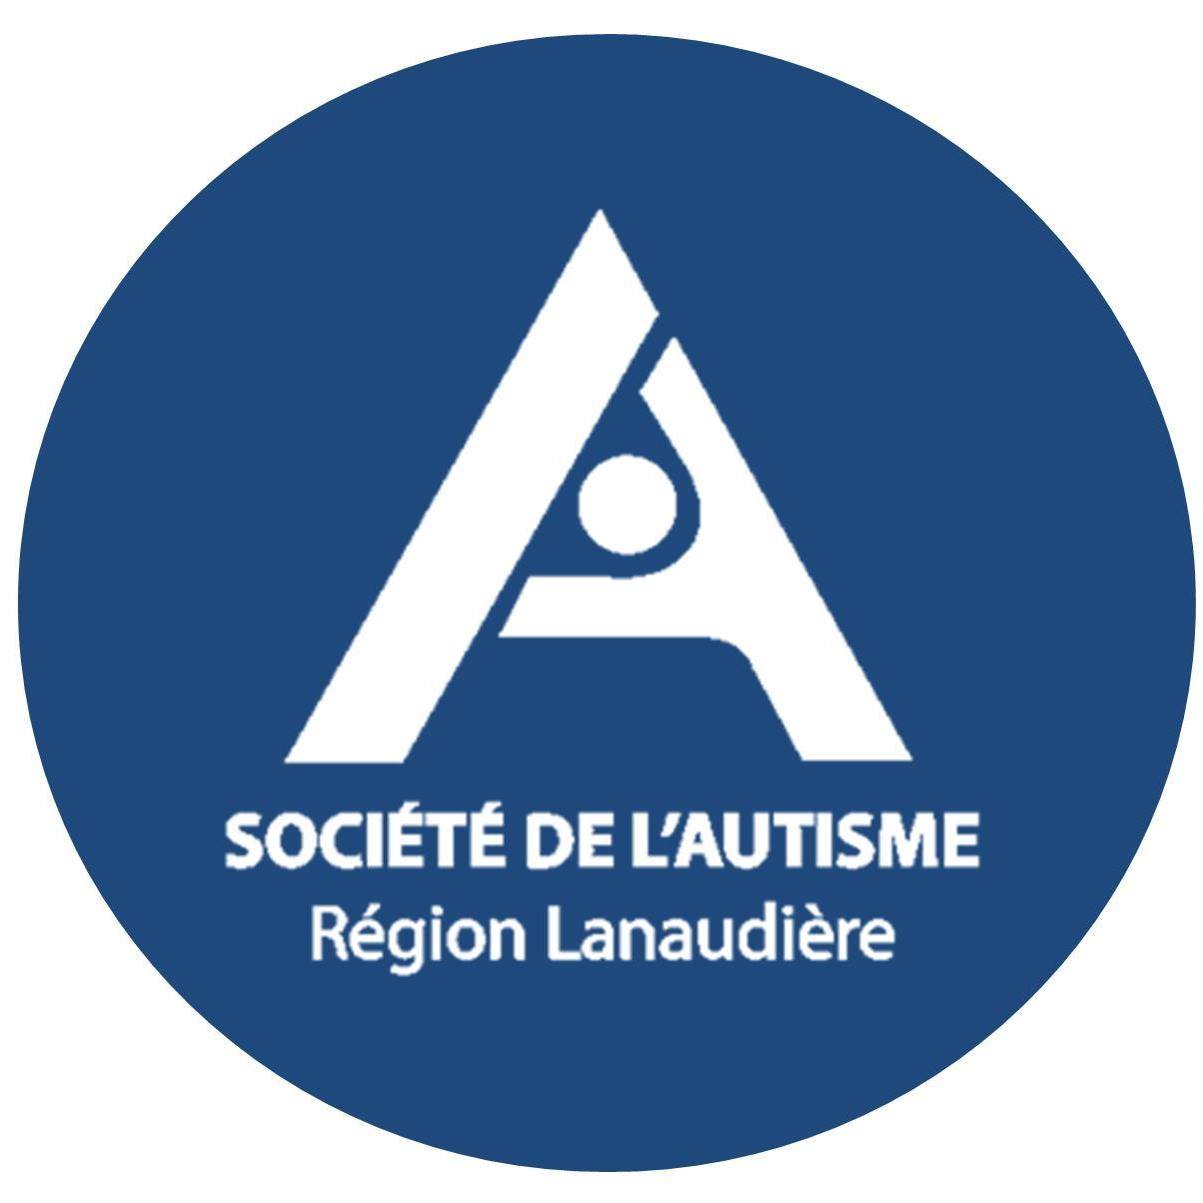 Société de l'autisme région Lanaudière